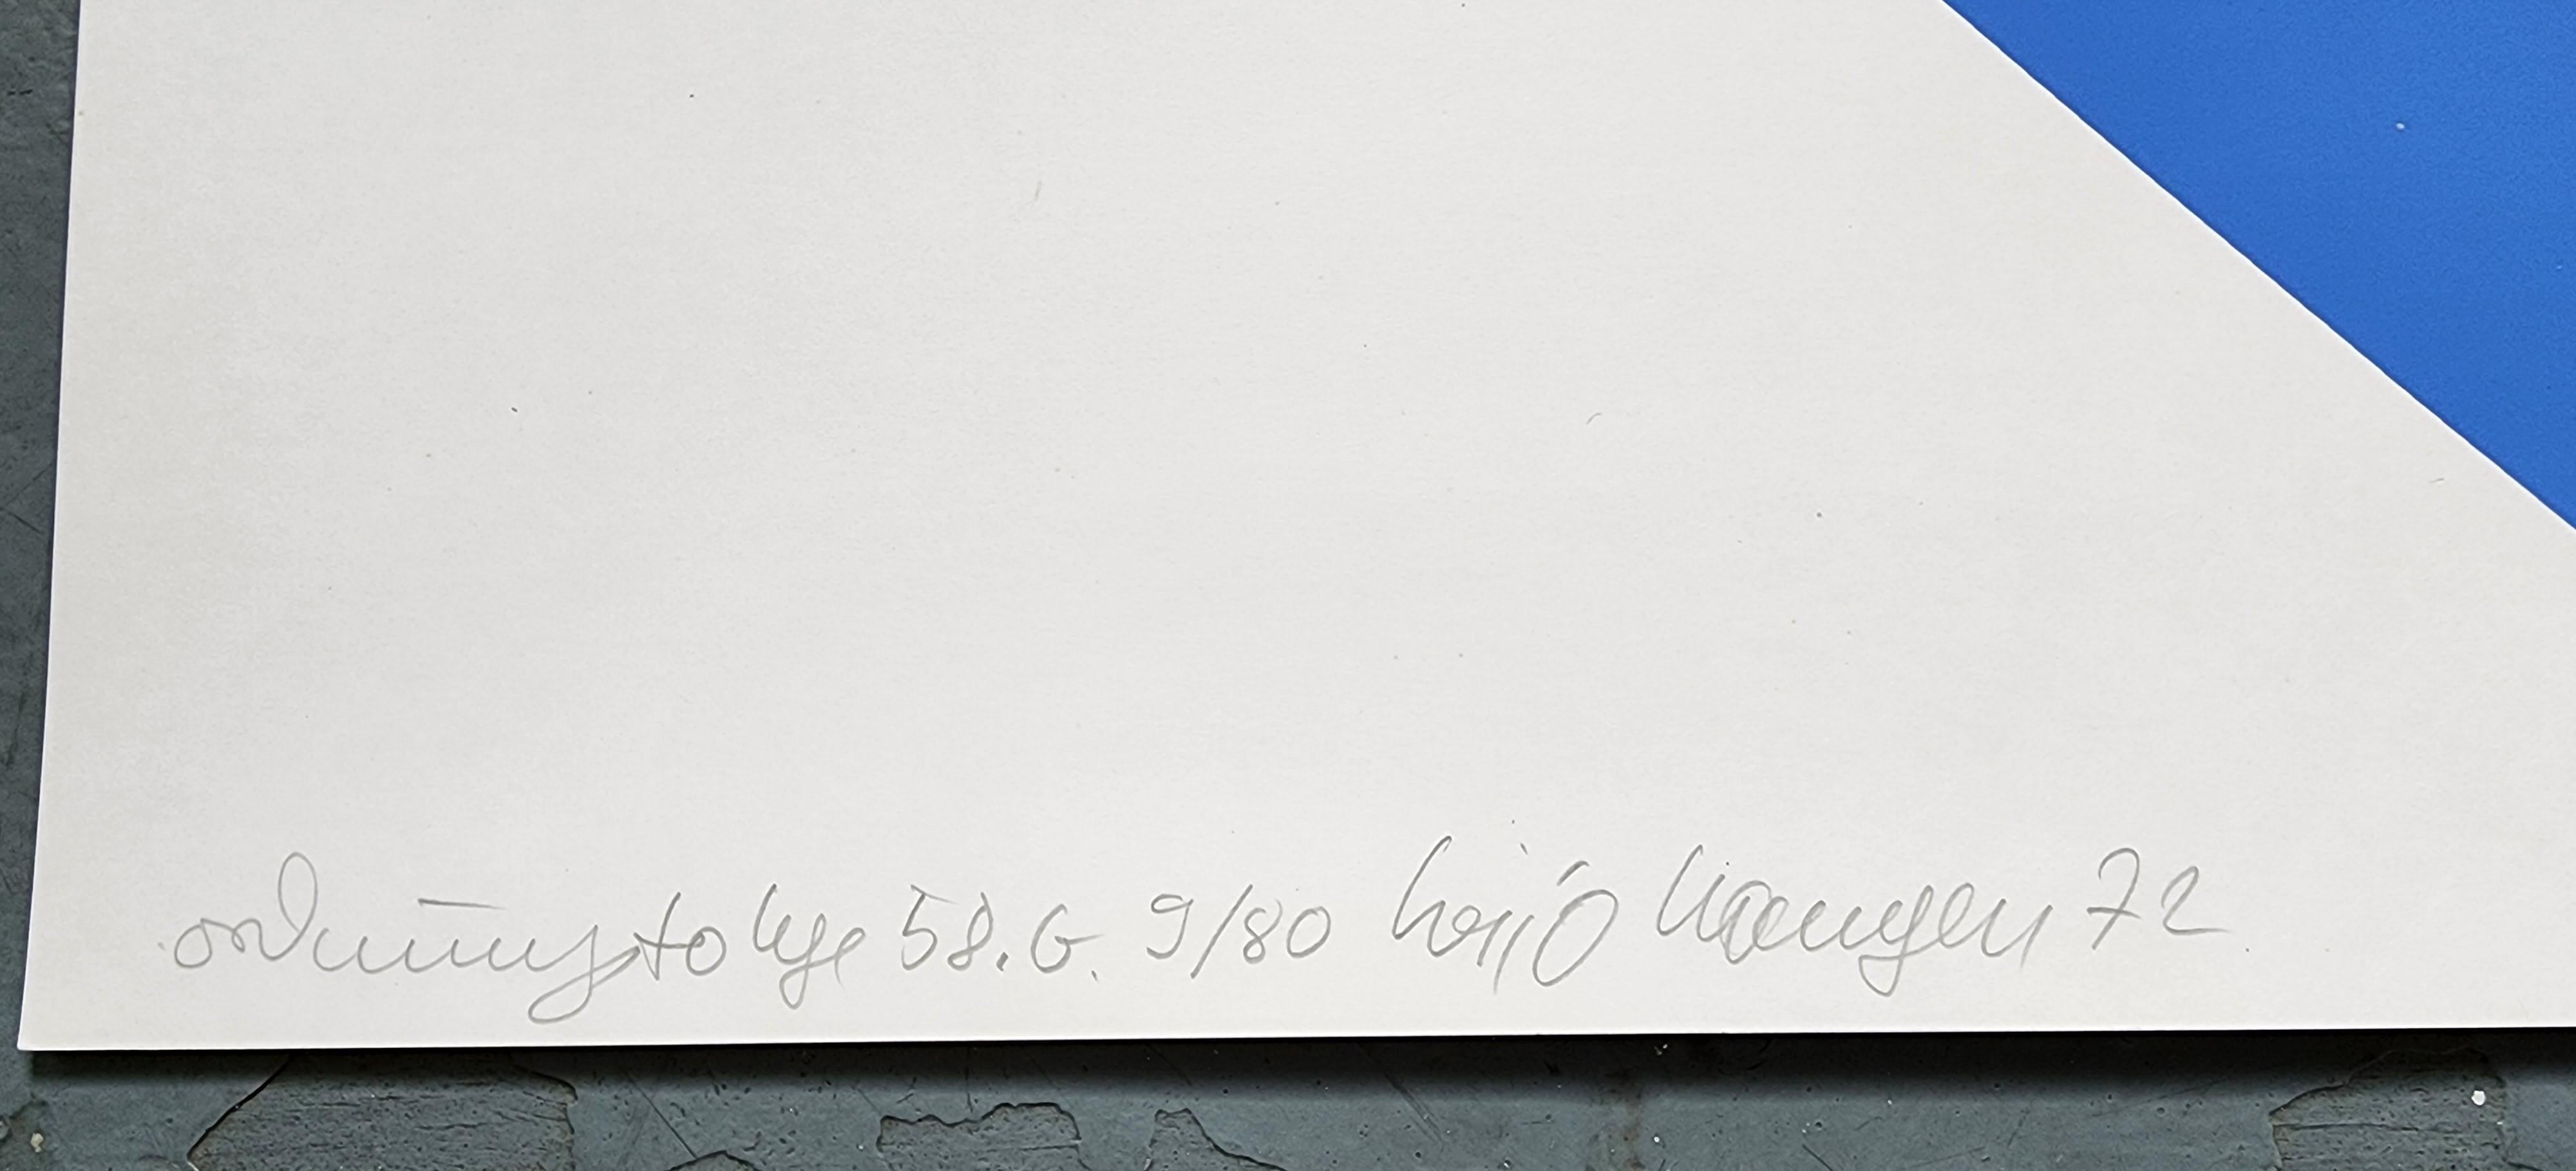 Hajo Hangen
Ordre #58.G (Ordnungsfolge 58.G)
Sérigraphie couleur
Année : 1972
Signé, numéroté, daté et titré à la main
Edition : 80
Taille : 24.0×16.9in sur 27.6×19.7in 
L'ACO a fourni 
Réf. : 924802-1176

Heijo Hangen (né le 29 avril 1927 à Bad